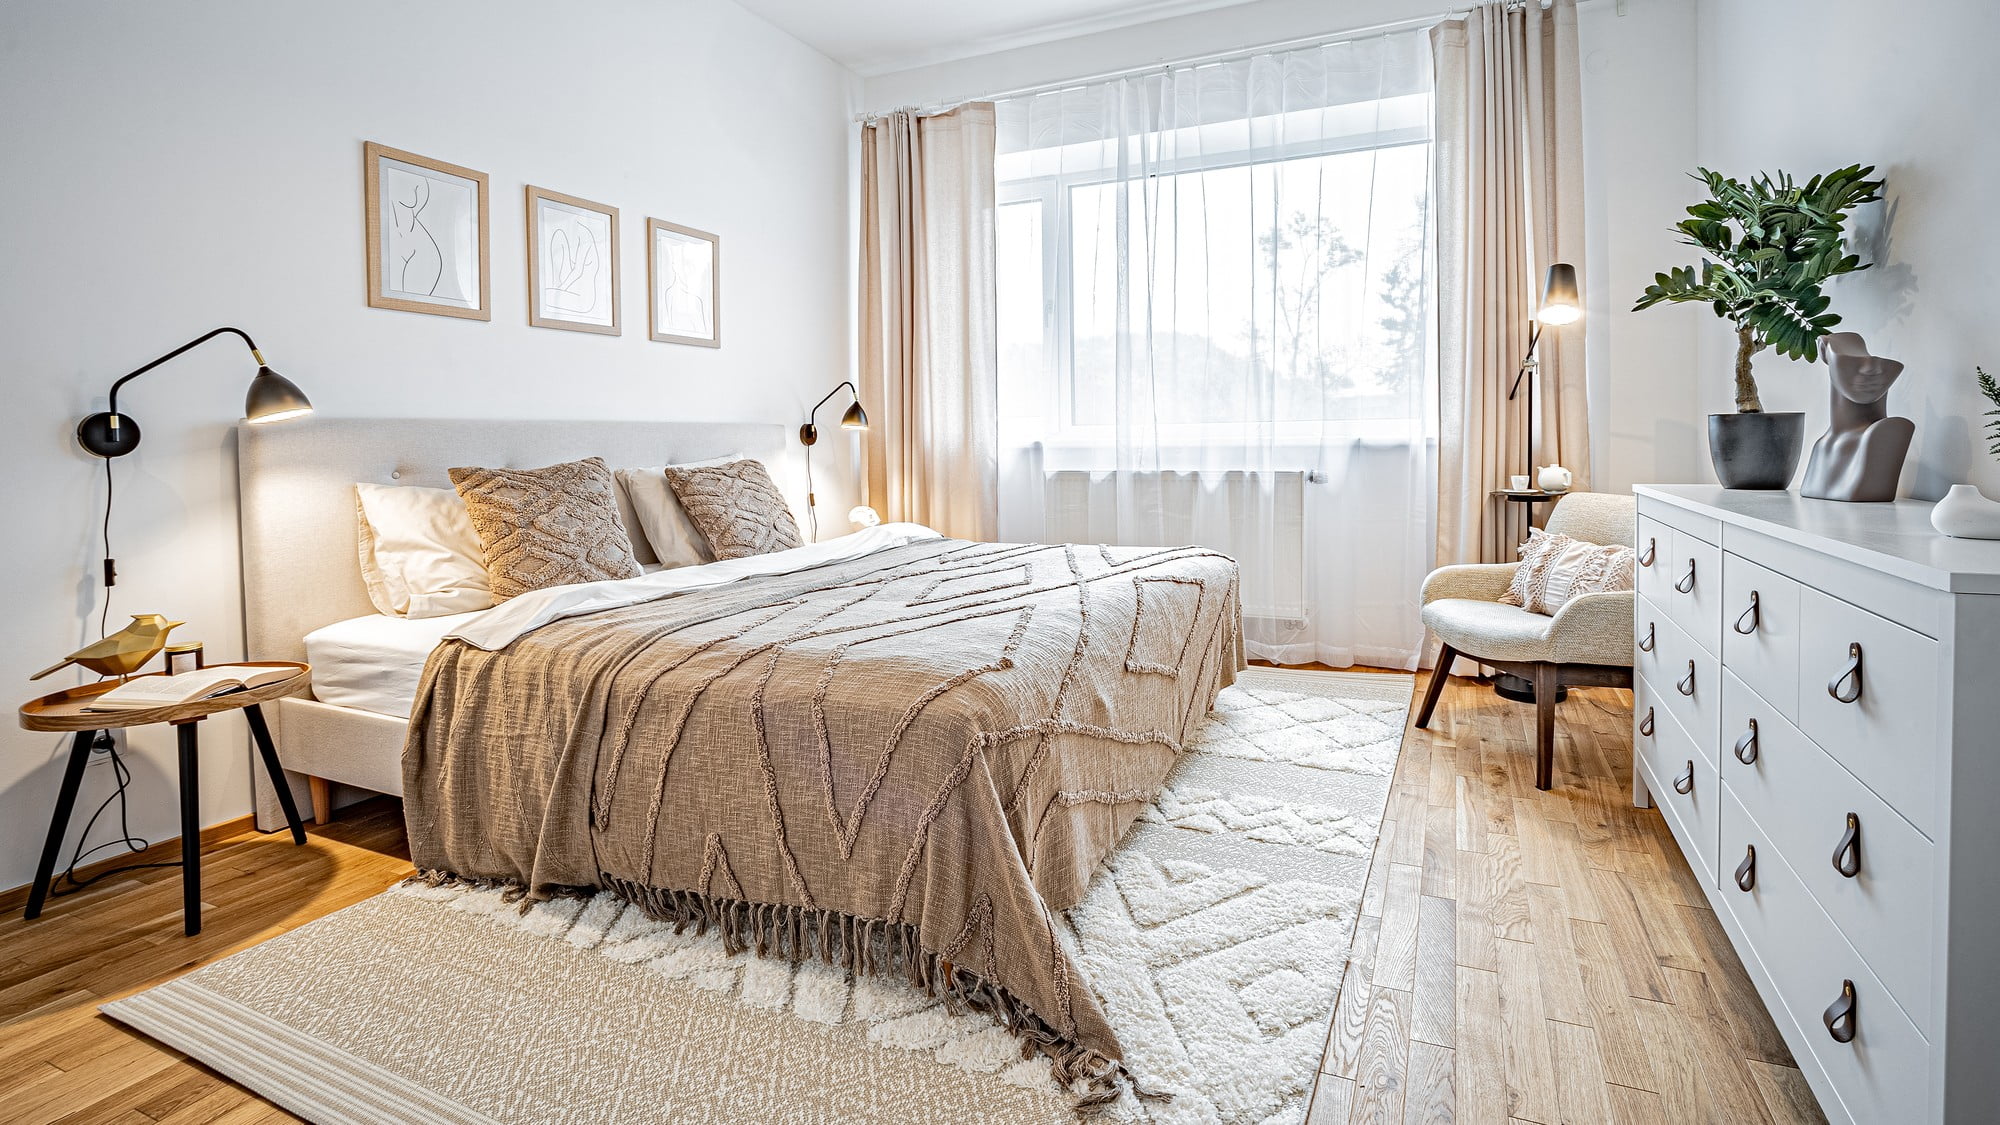 Dormitor modern - inspirație pentru o amenajare într-o paletă monocromatică de crem.